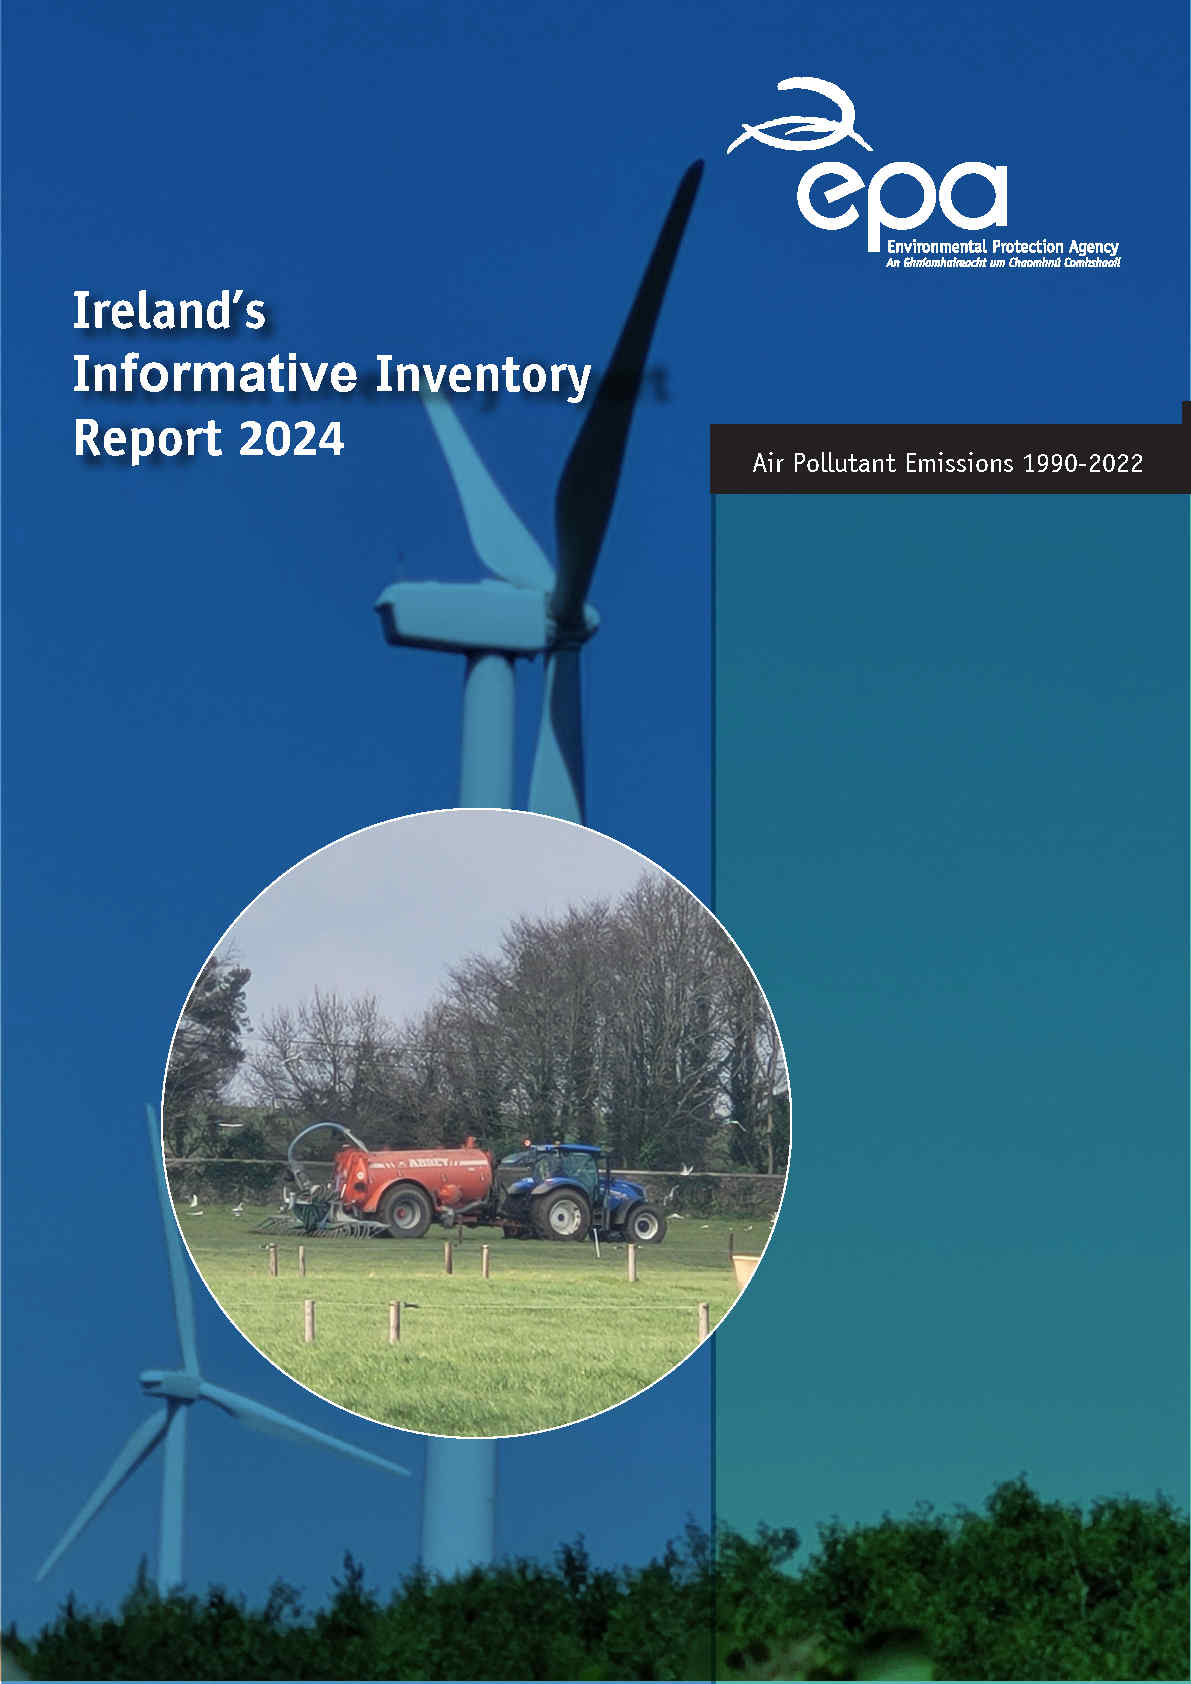 Report cover of IIR